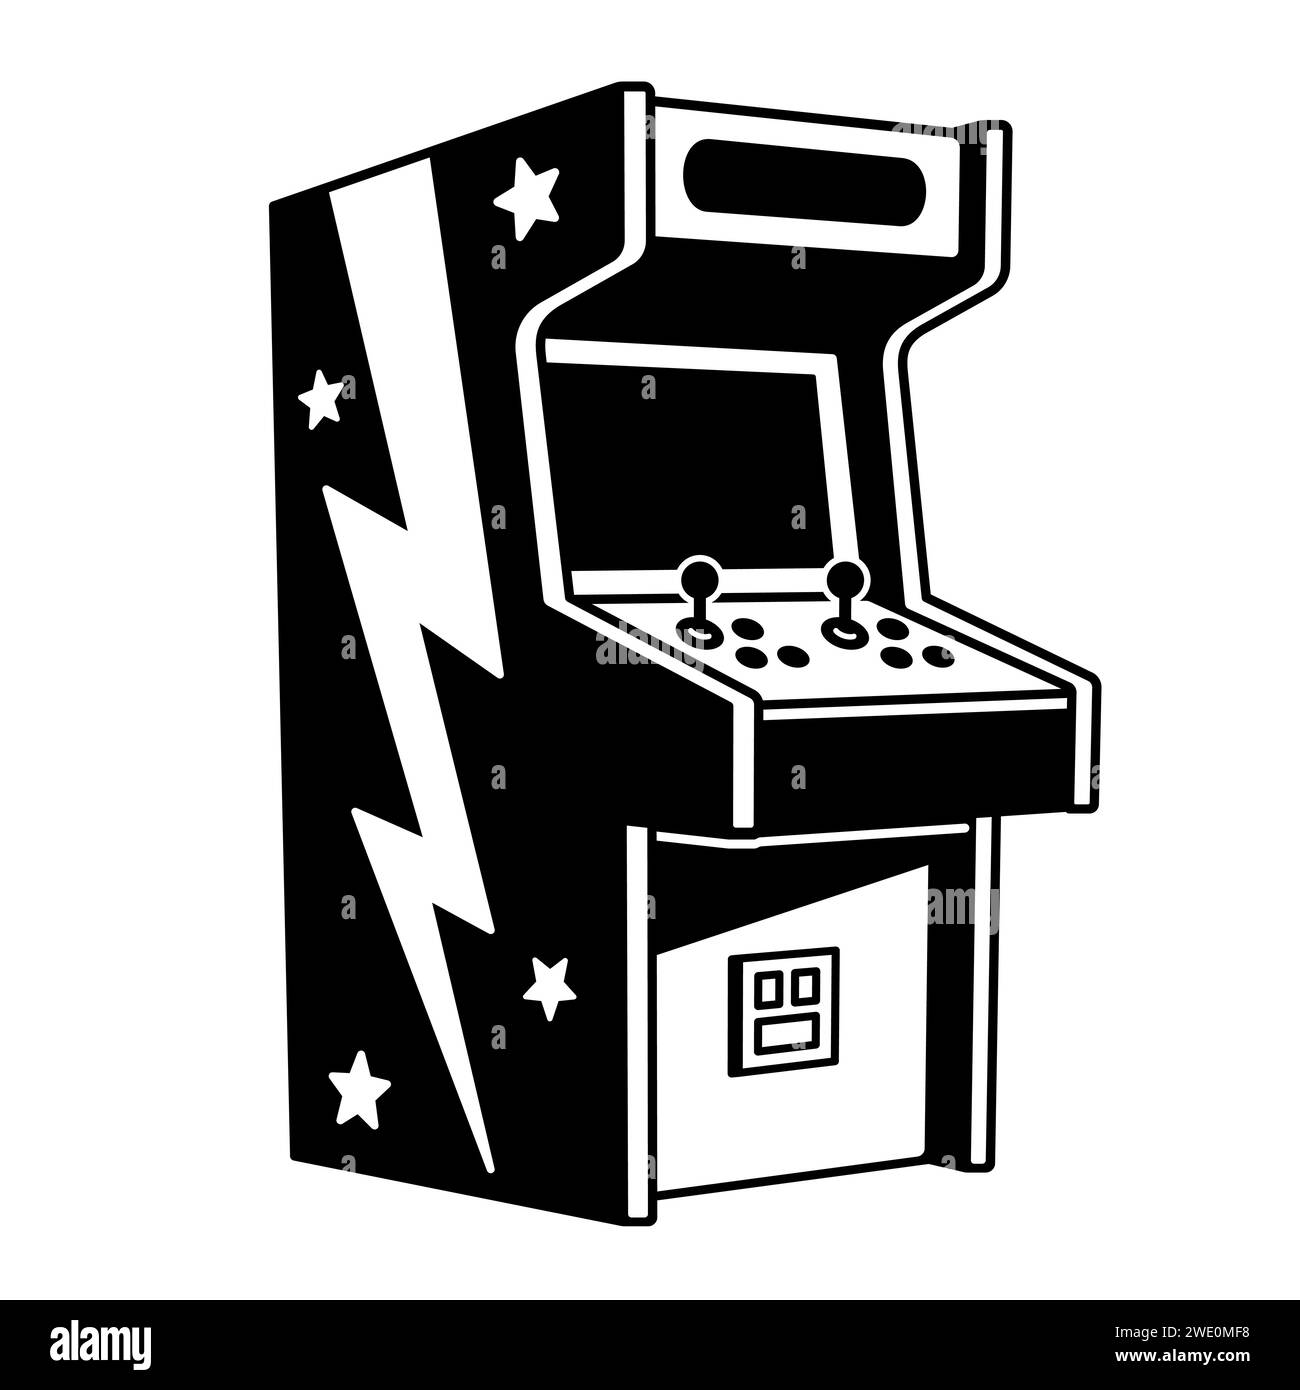 Klassische Arcade-Maschine für 2 Spieler, schwarz-weiße Zeichentrickzeichnung. Vektor-Illustration für Vintage-Videospiele. Stock Vektor